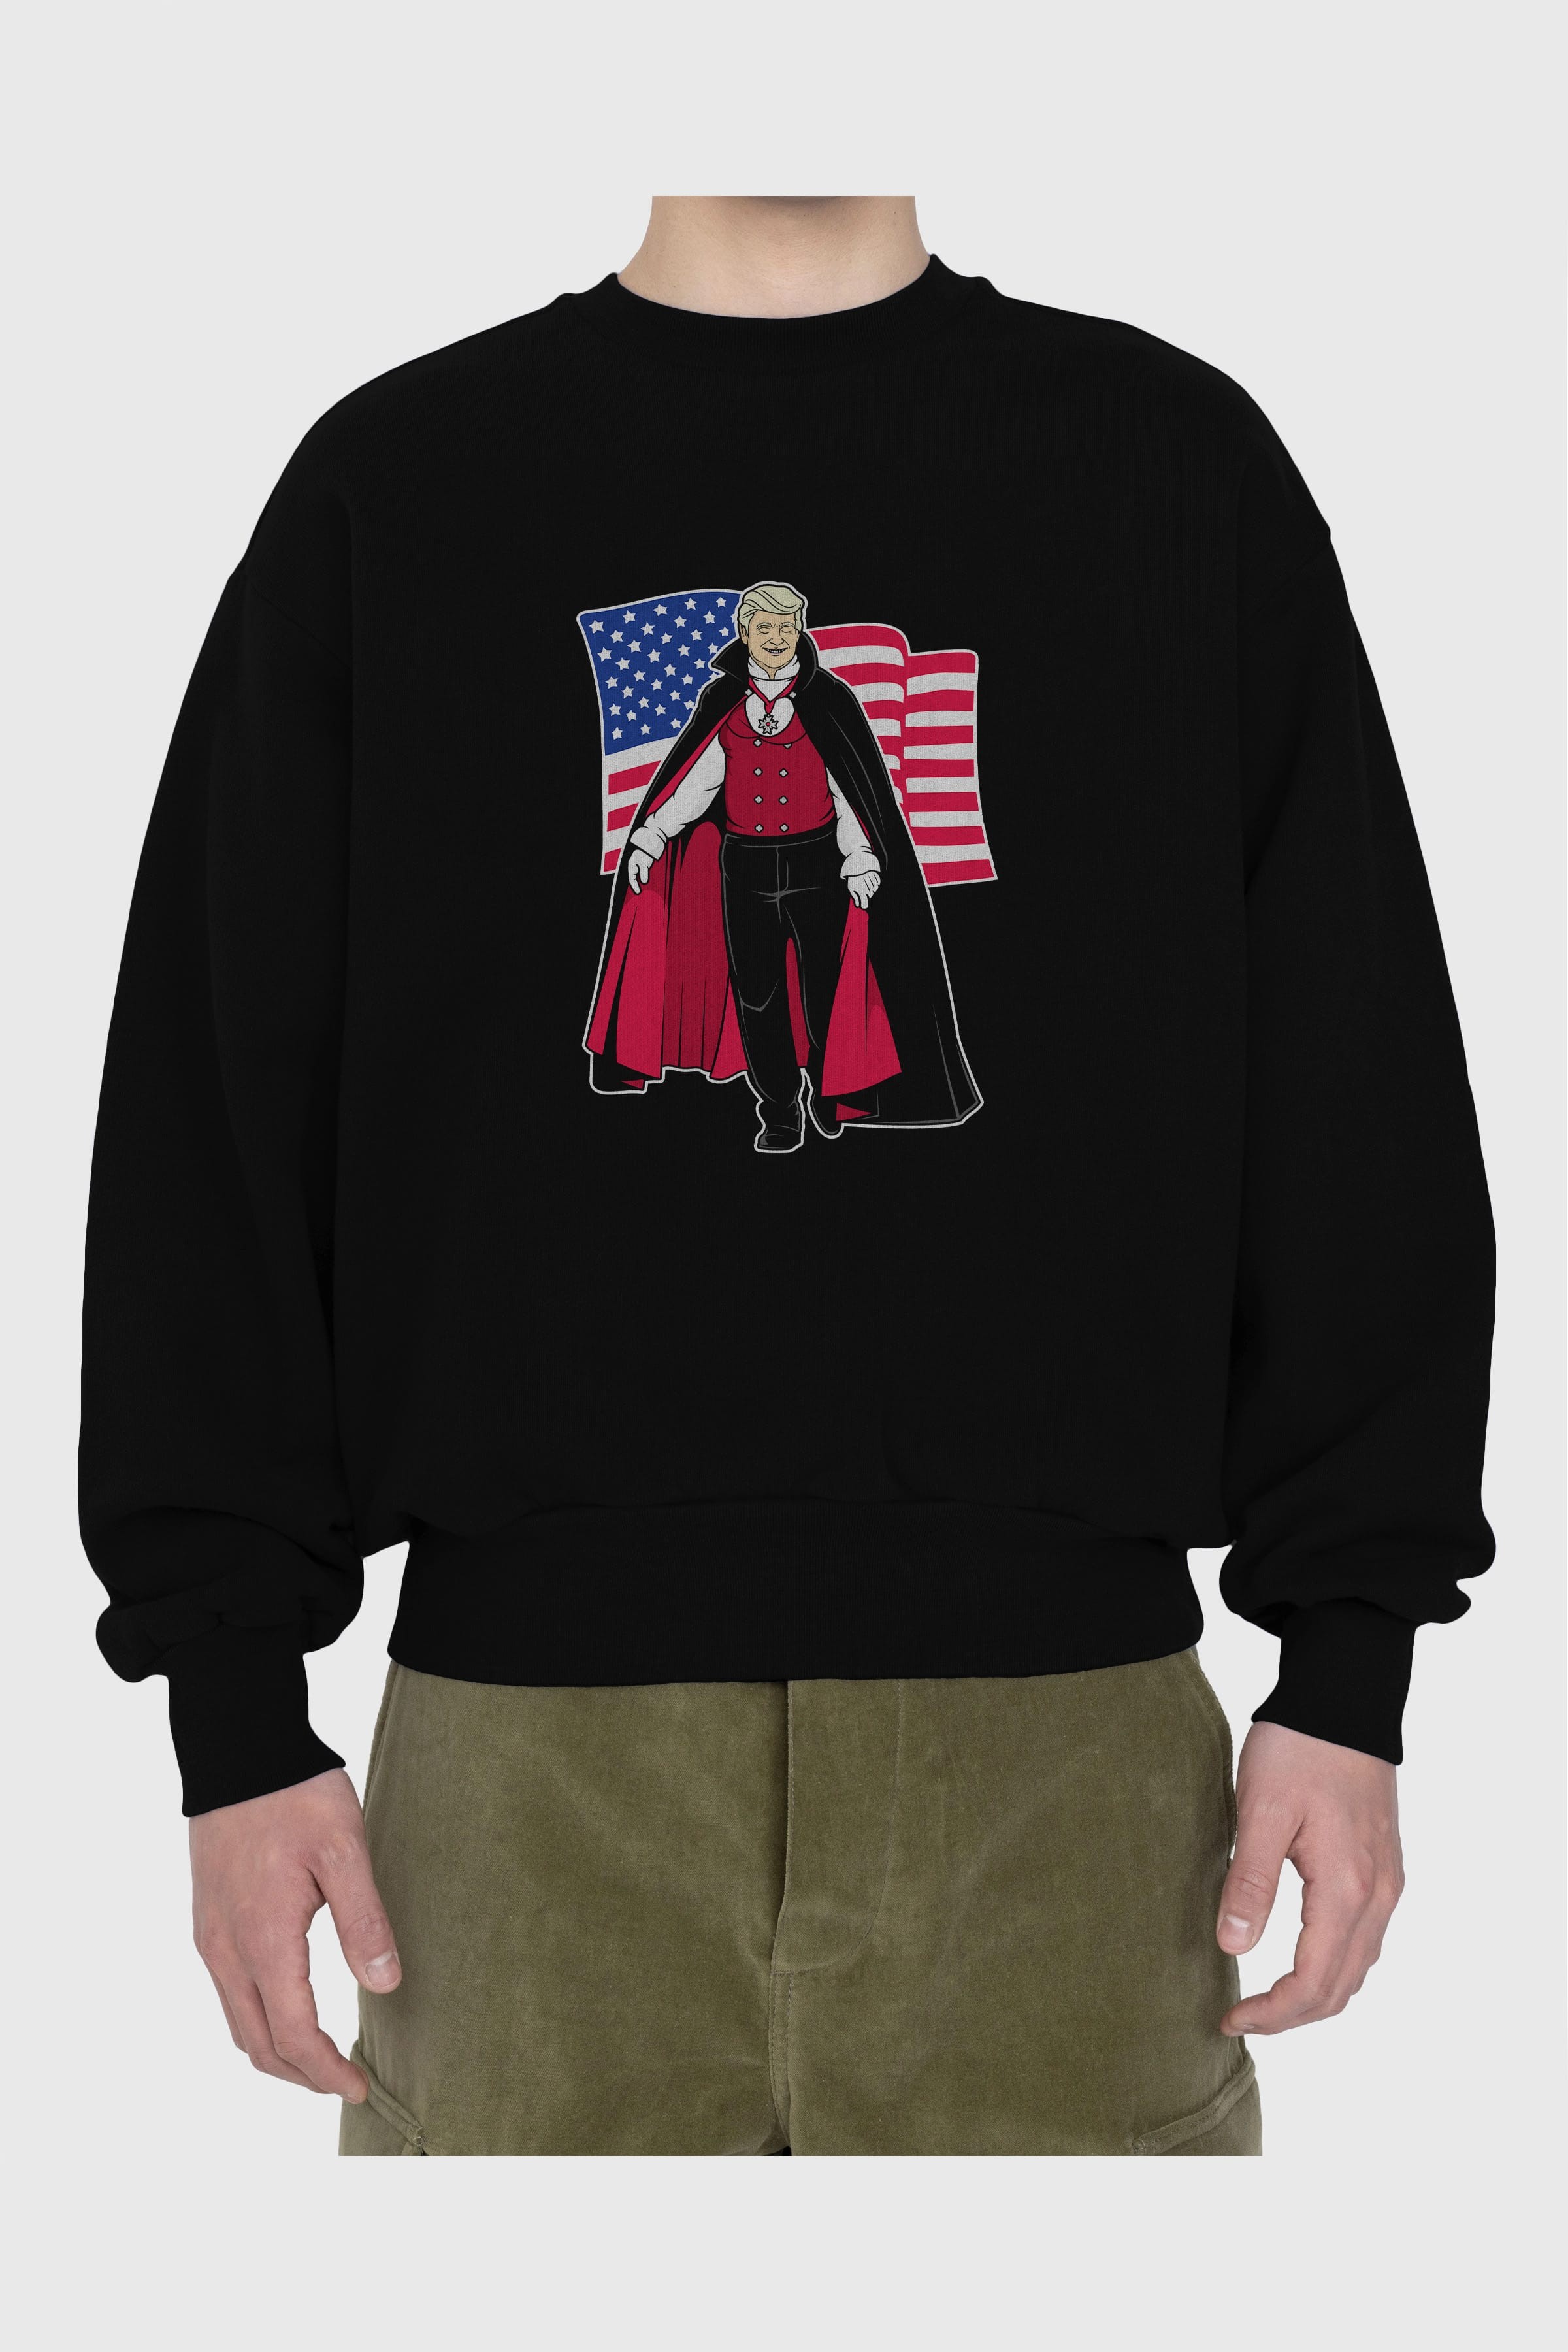 Trump Dracula Ön Baskılı Oversize Sweatshirt Erkek Kadın Unisex